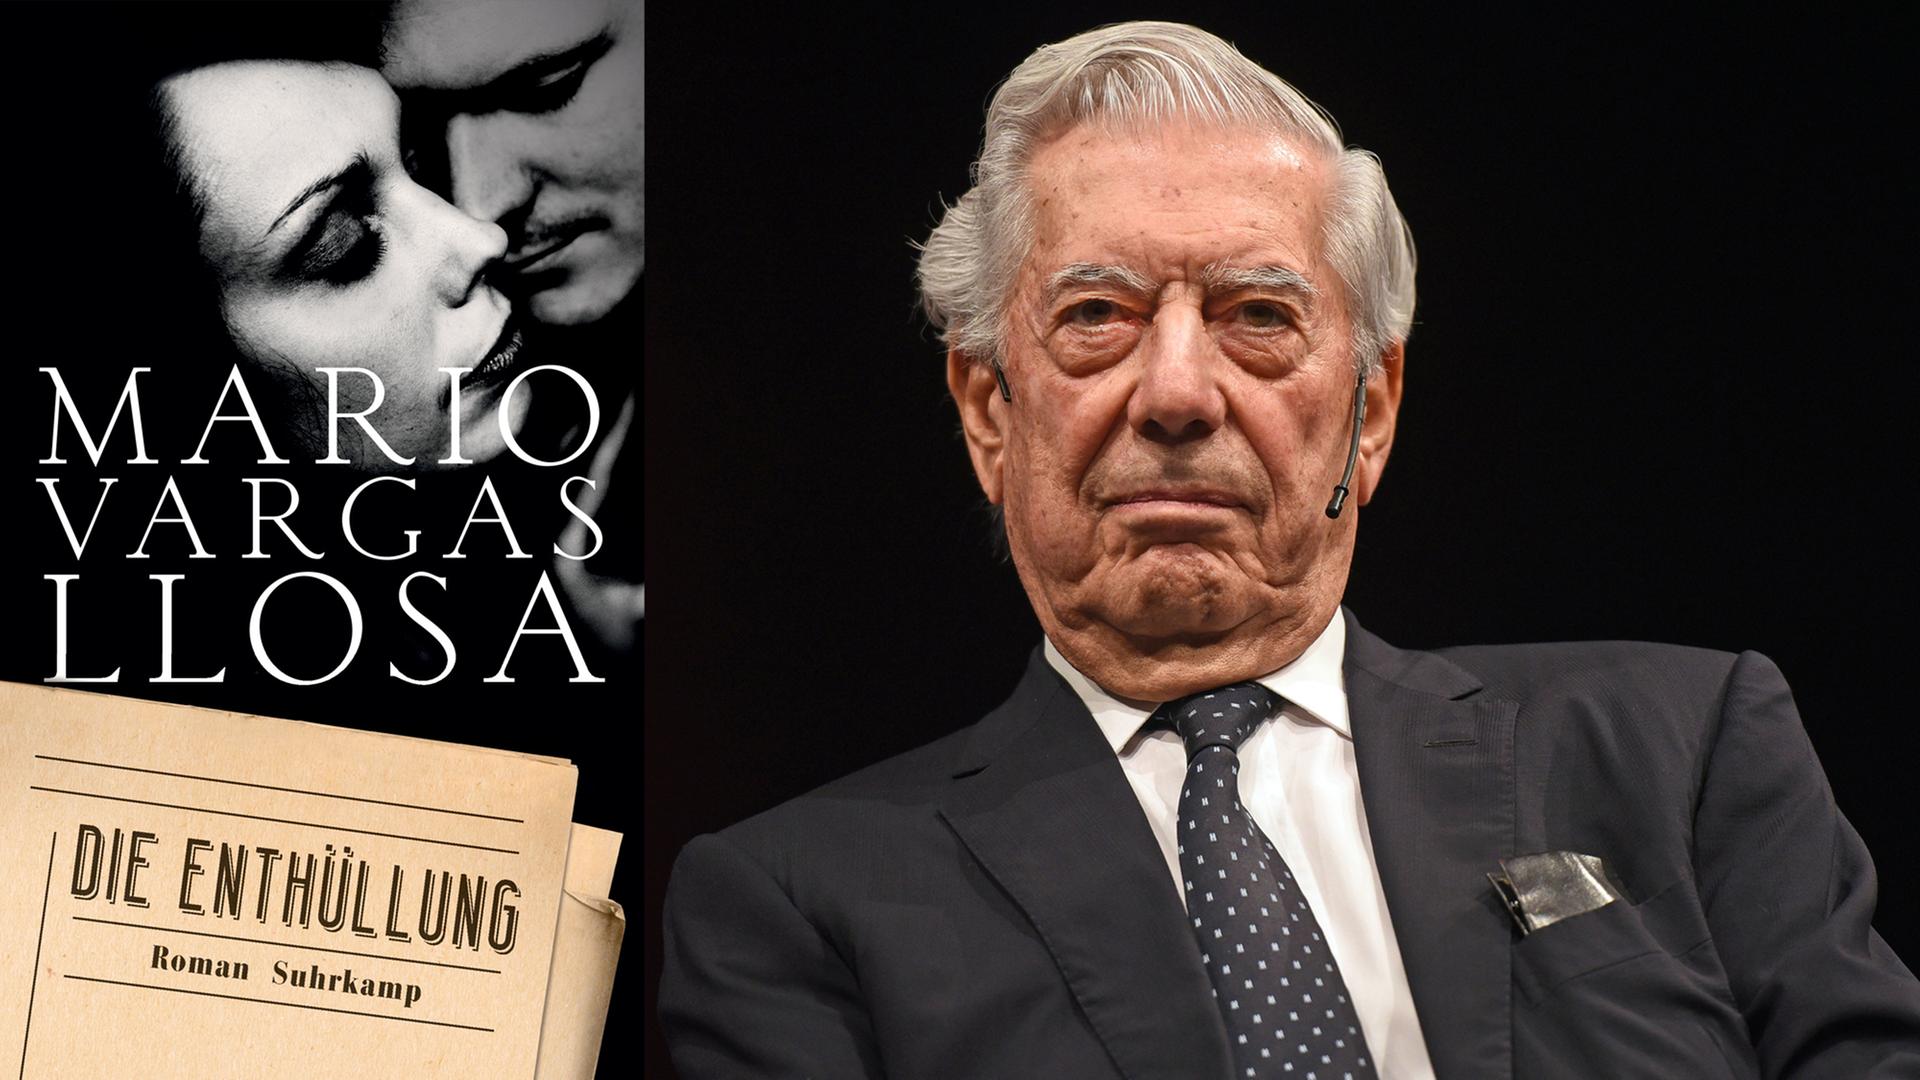 Der Autor Mario Vargas Llosa sitzt am 23. Oktobe 2016 in Köln bei einer Lesung seines Buches "Die Enthüllung". Links: das Buchvover der Neuerscheinung.